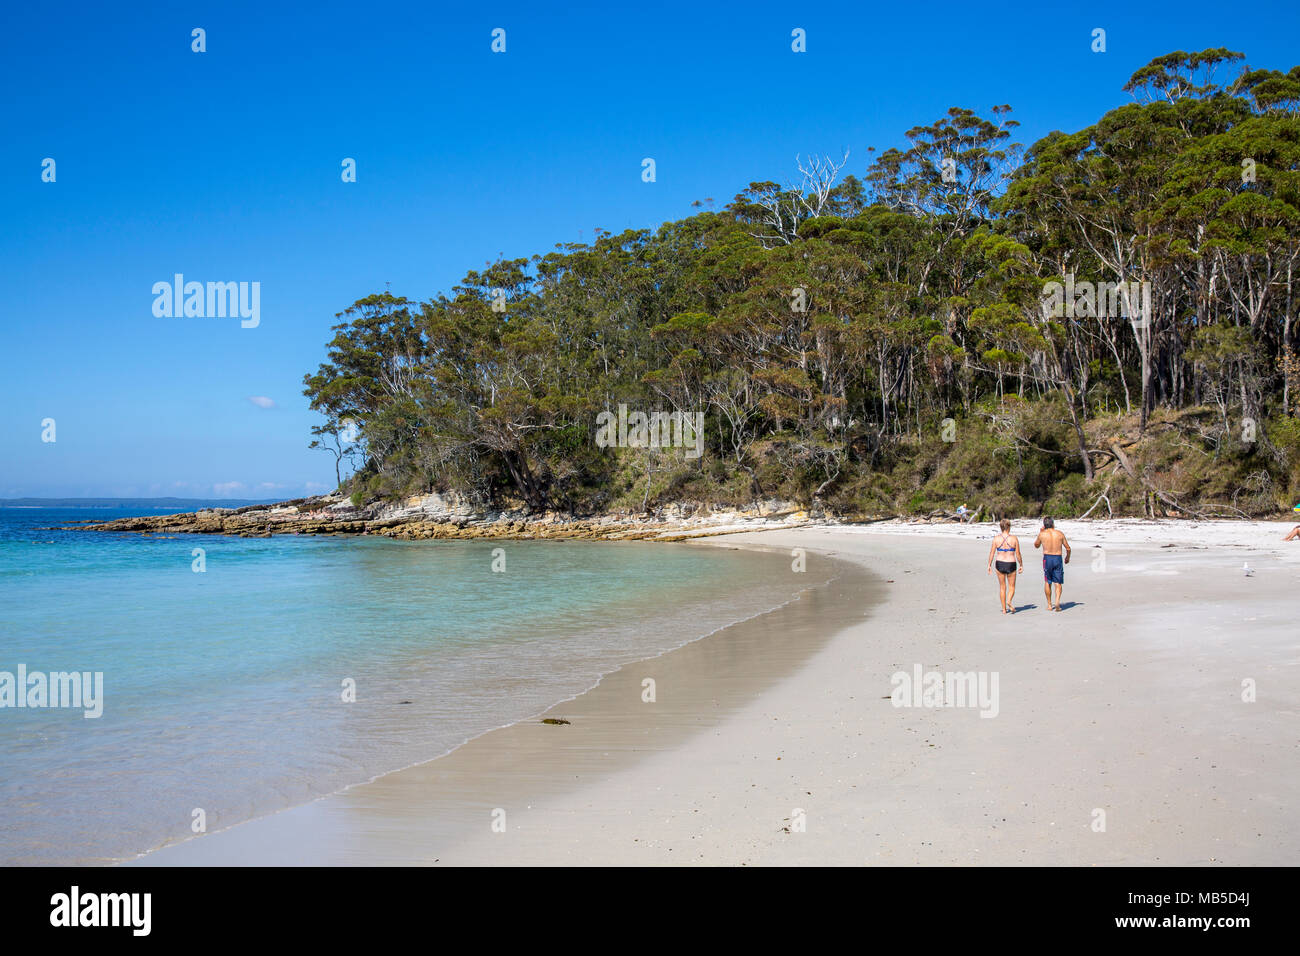 Plage de Blenheim à Jervis bay, plage populaire pour la plongée et la natation,Nouvelle Galles du Sud, Australie Banque D'Images